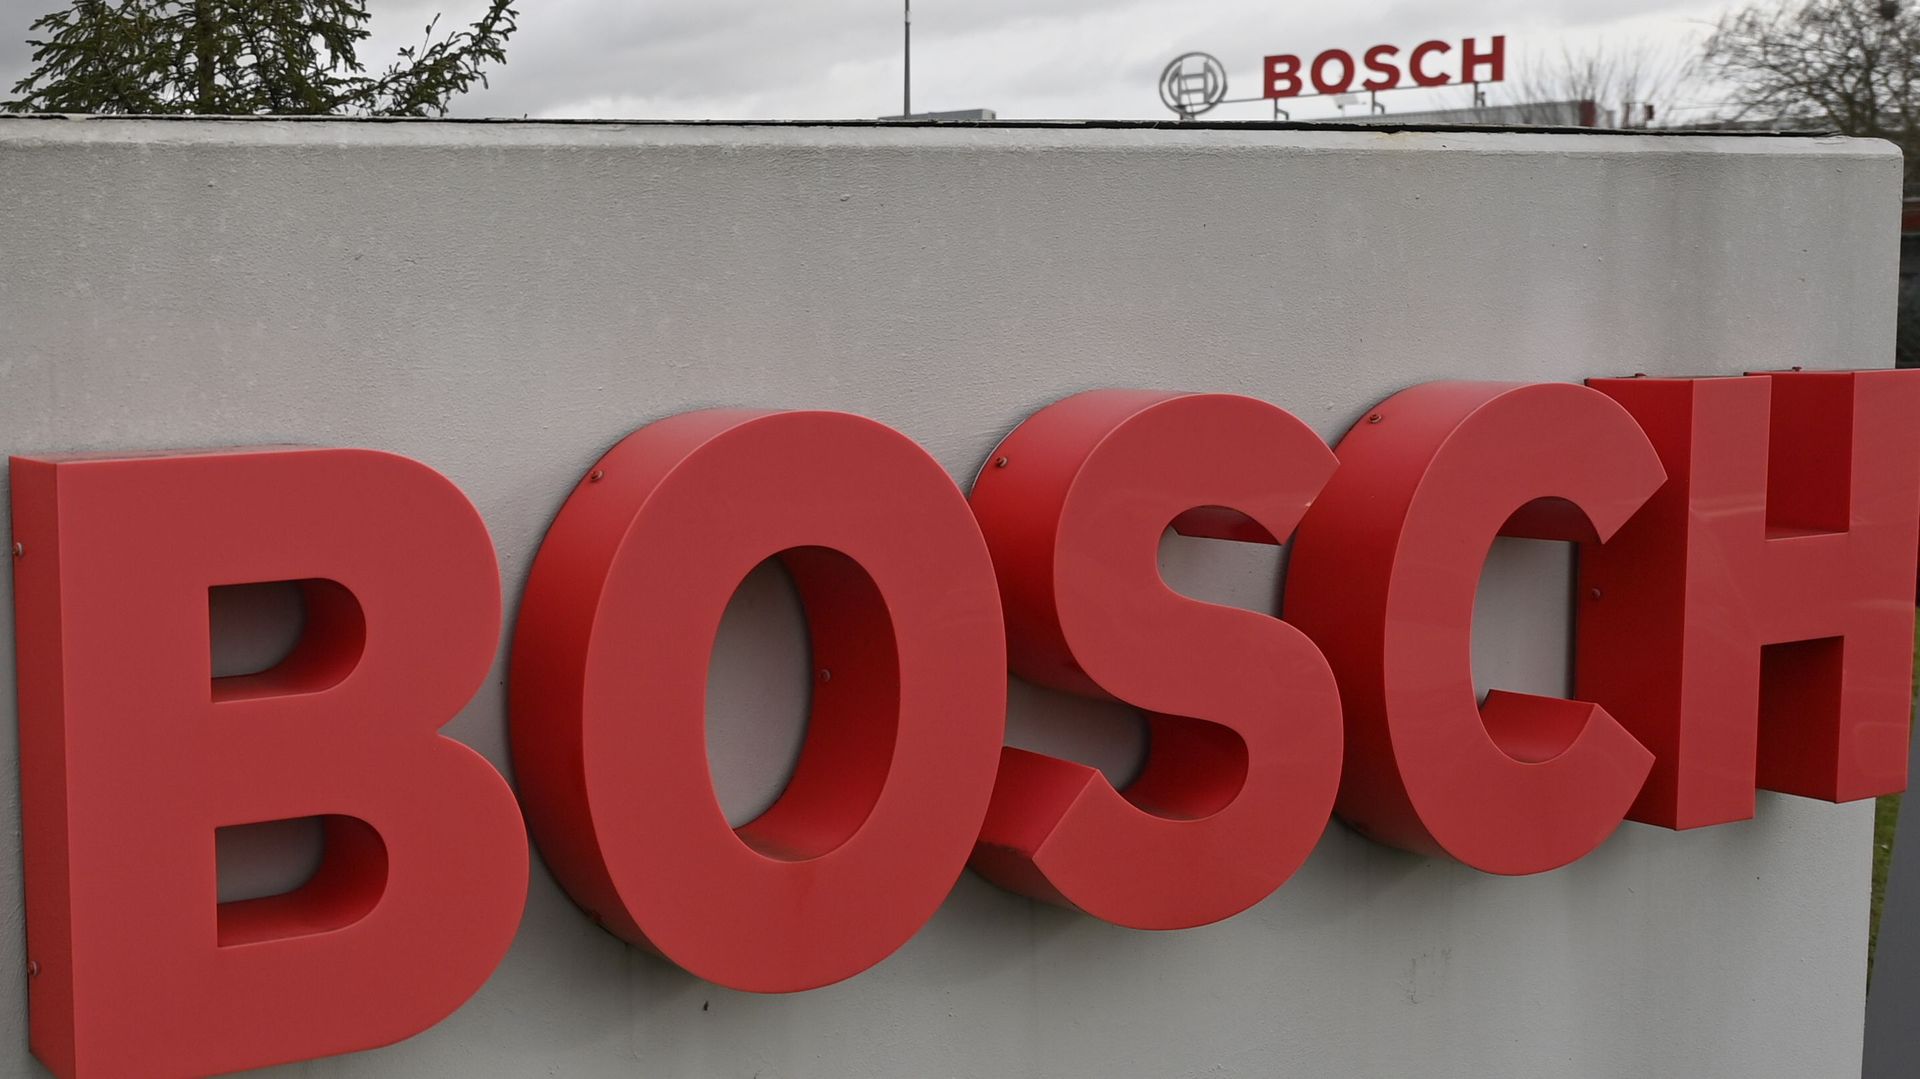 Restructuration Bosch Tirlemont : le nombre d'emplois menacés passe de 400 à 273